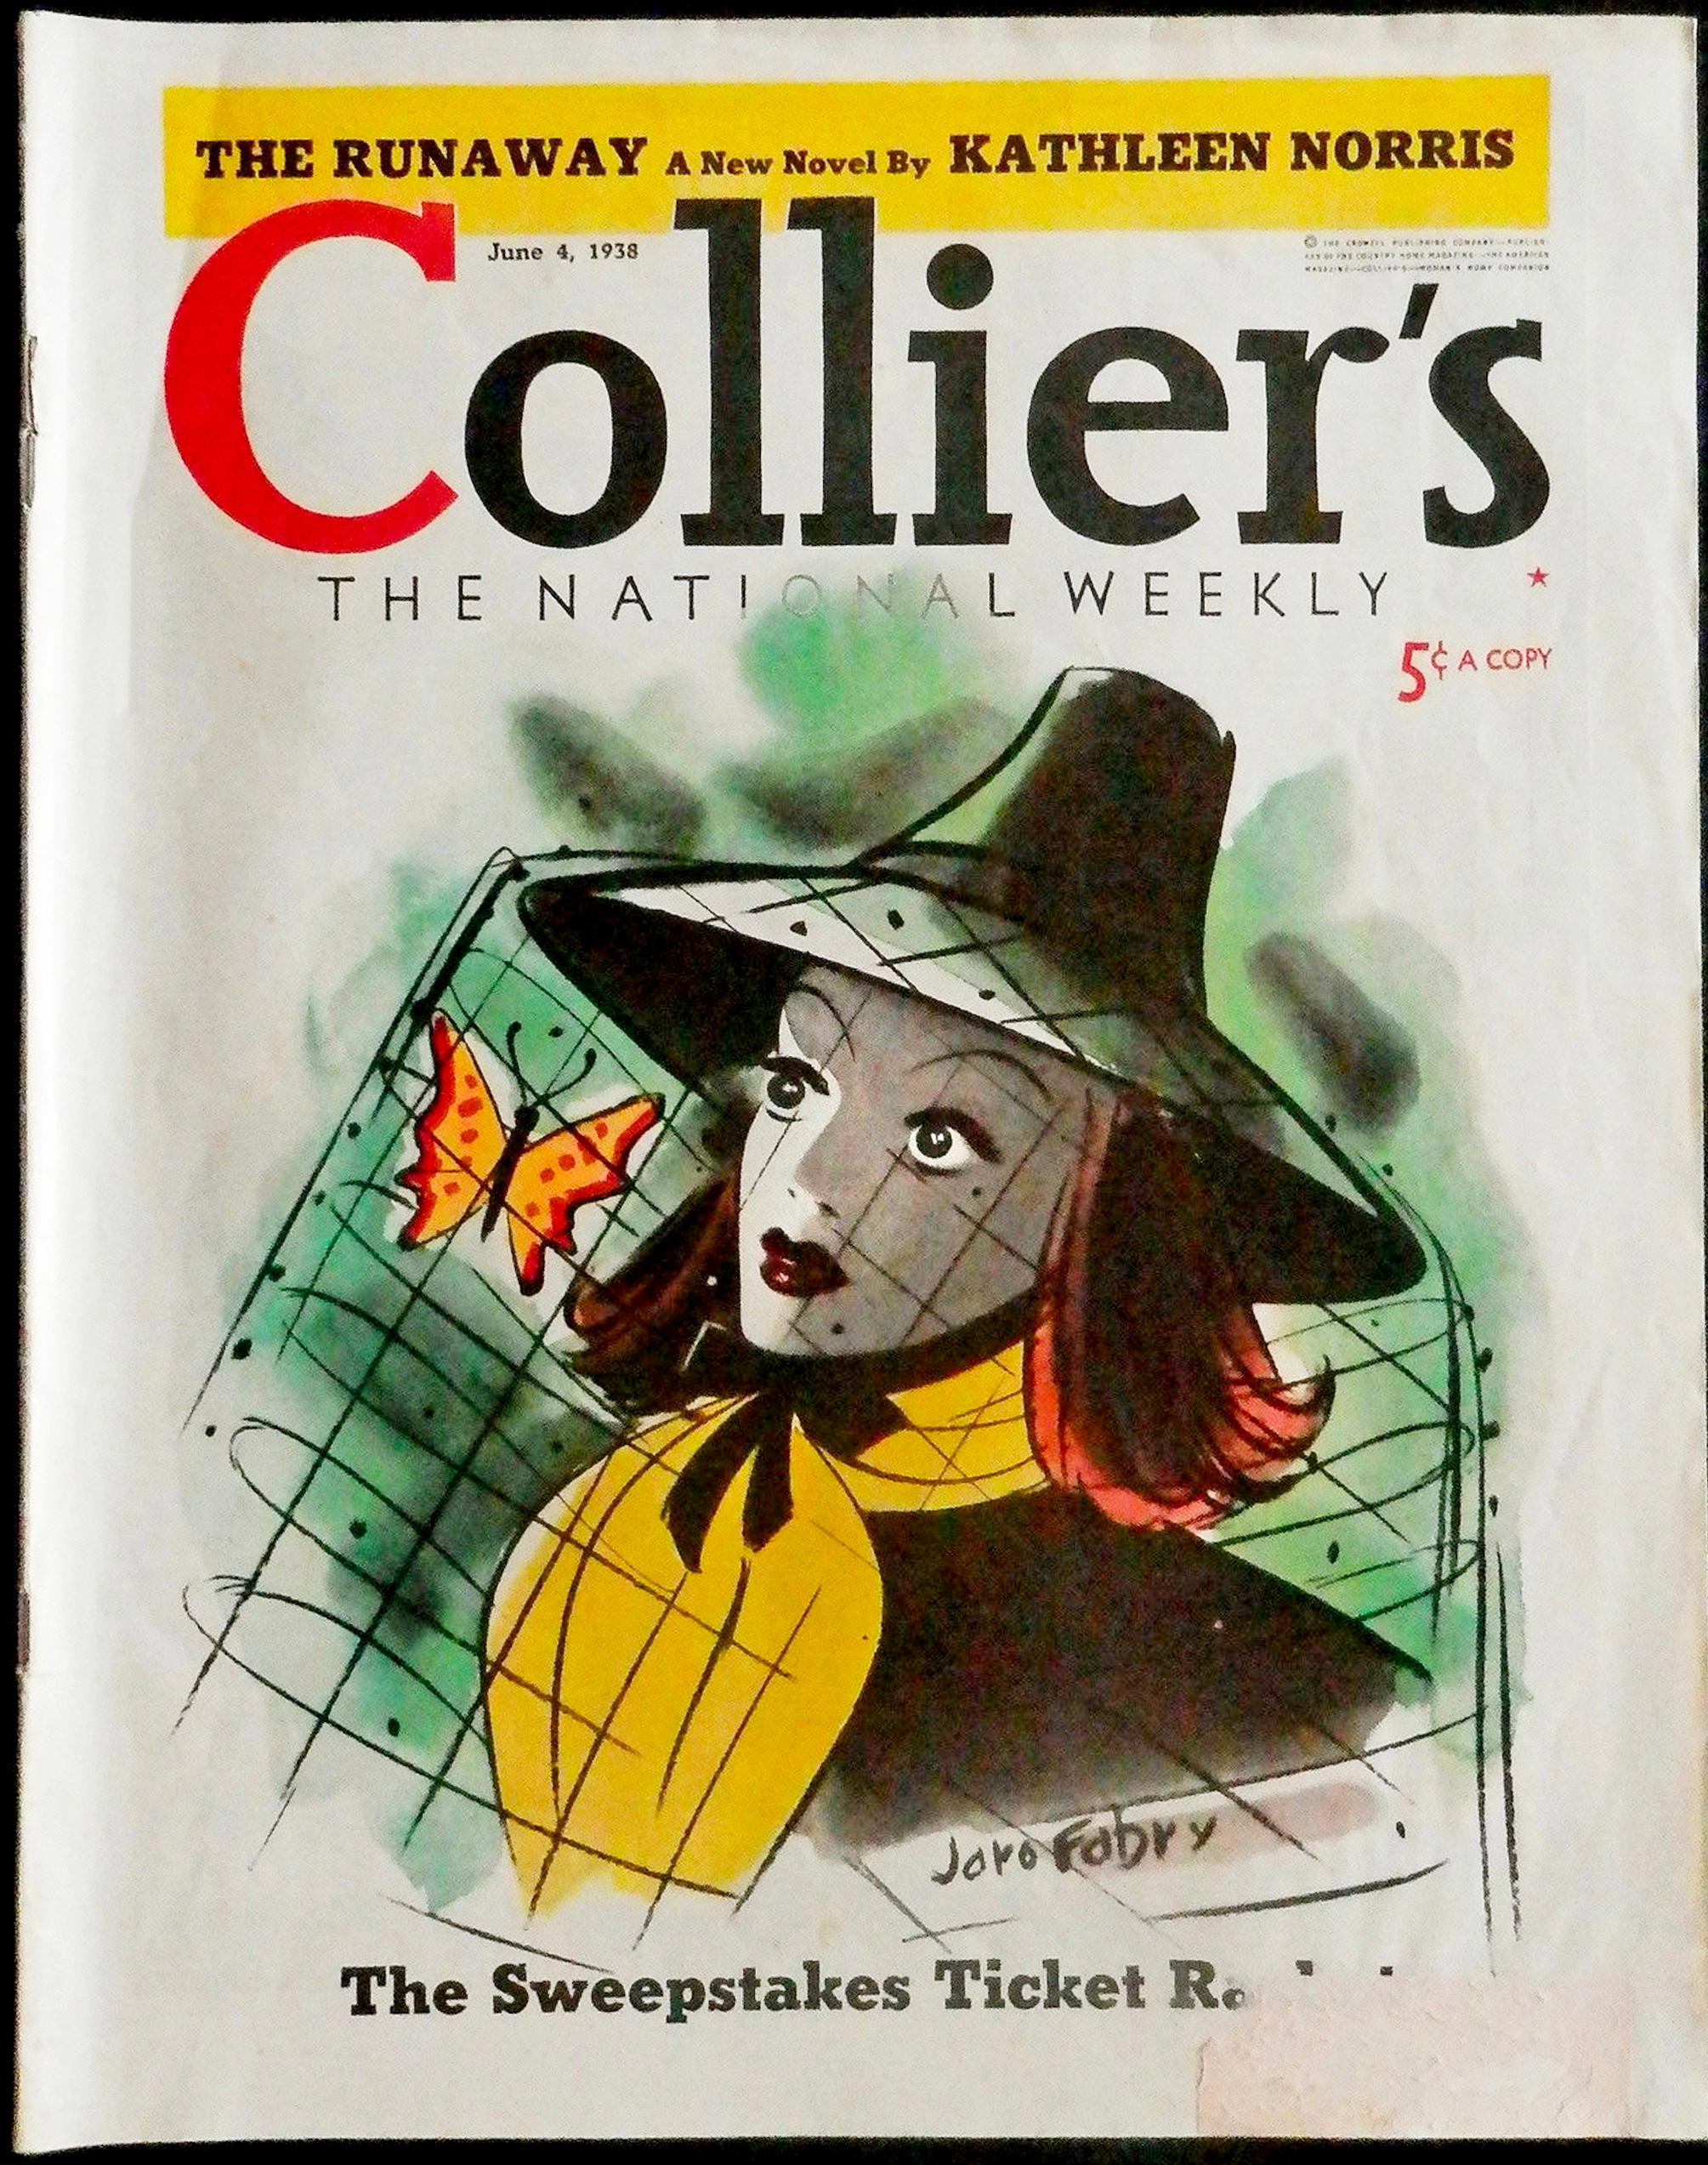 Femme avec un papillon dans son chapeau. Colliers - Couverture de magazine - Art de Jaro Fabry